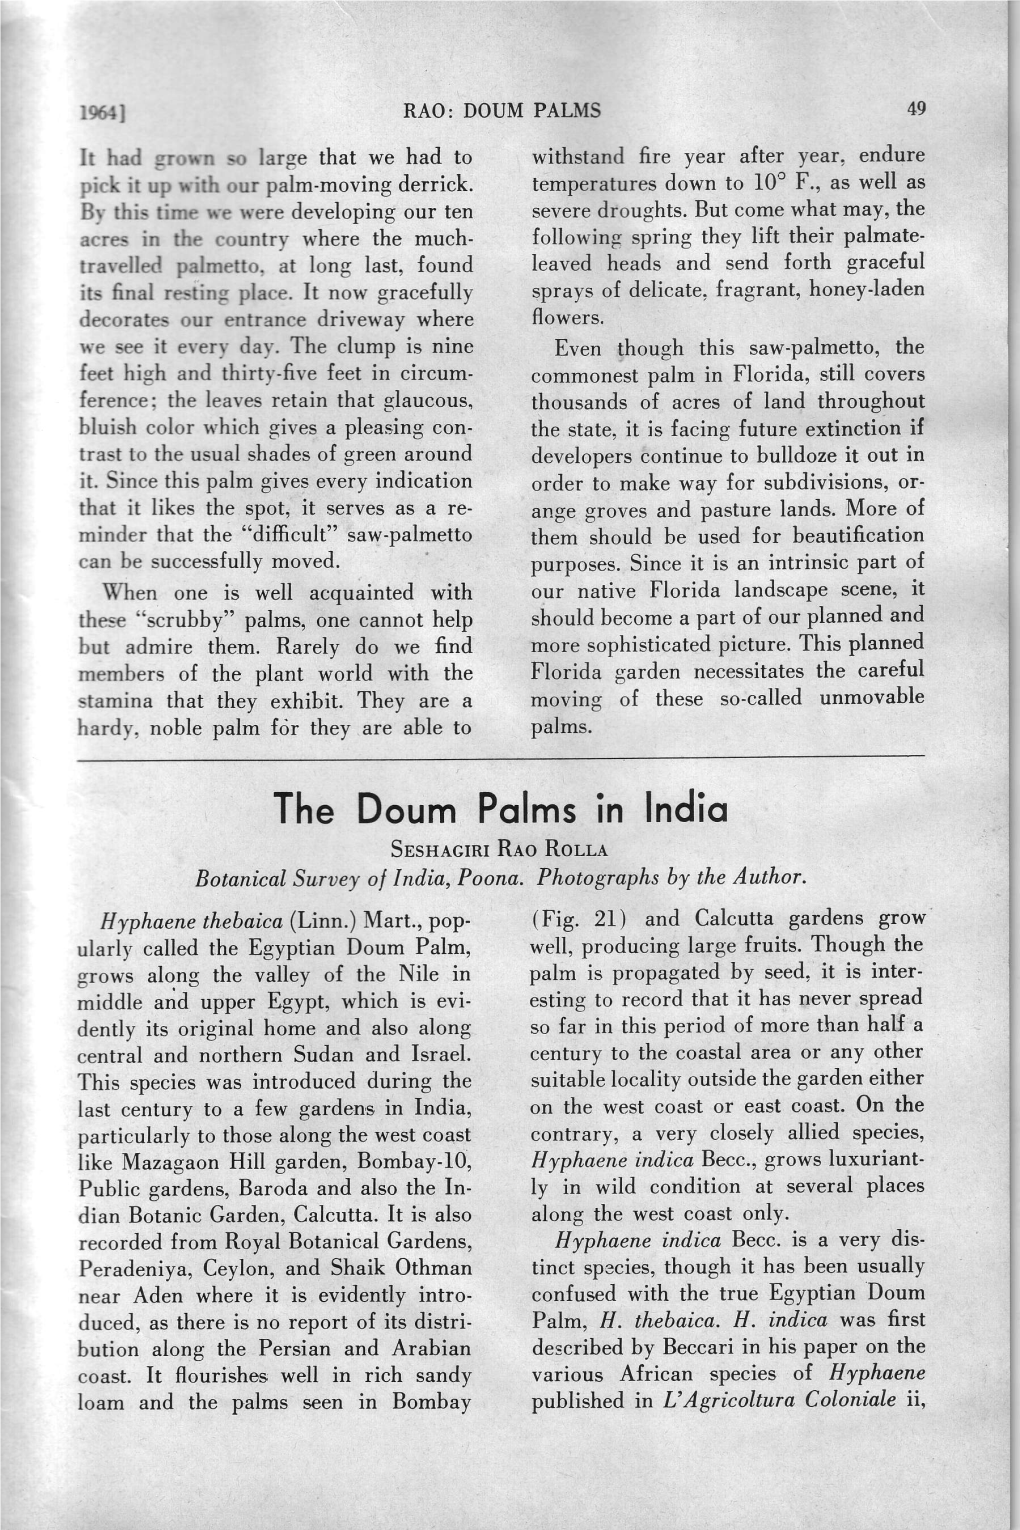 The Doum Pqlms in Indio